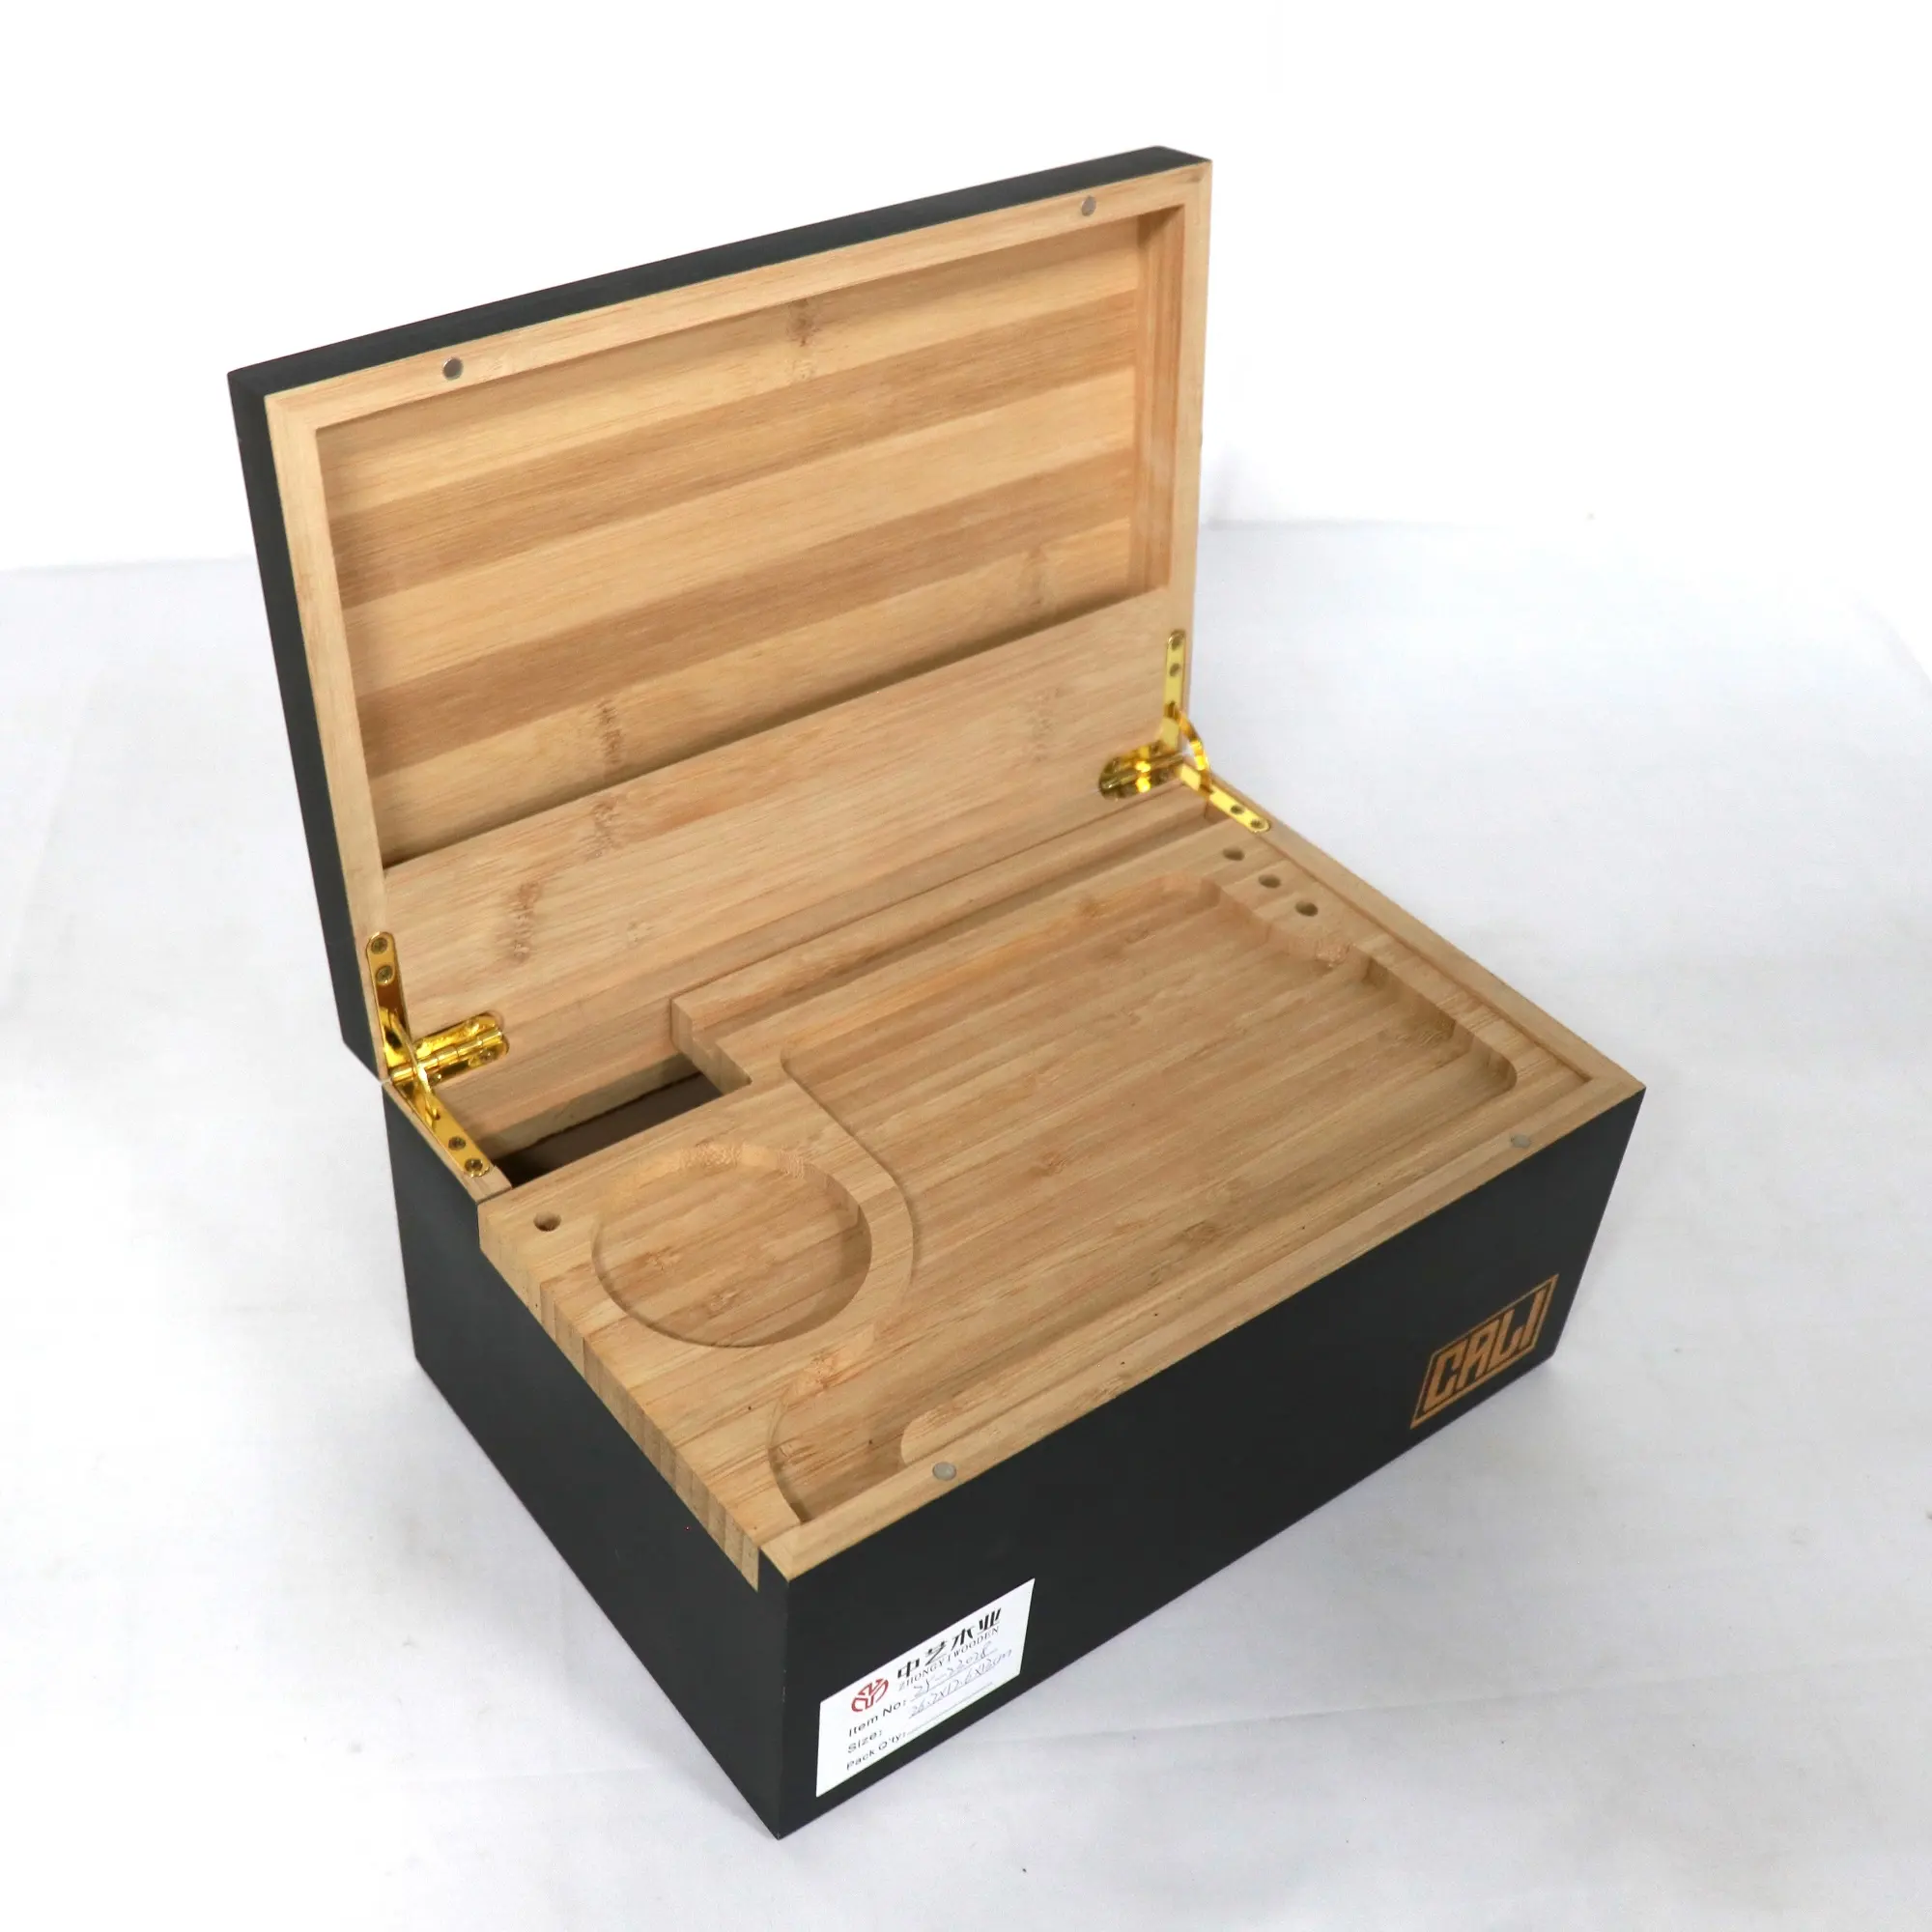 OEM सजावटी लकड़ी लक्जरी छिपाने की जगह बॉक्स धूम्रपान बांस छिपाने की जगह बॉक्स hinged ढक्कन के साथ रोलिंग ट्रे के साथ लकड़ी के बक्से